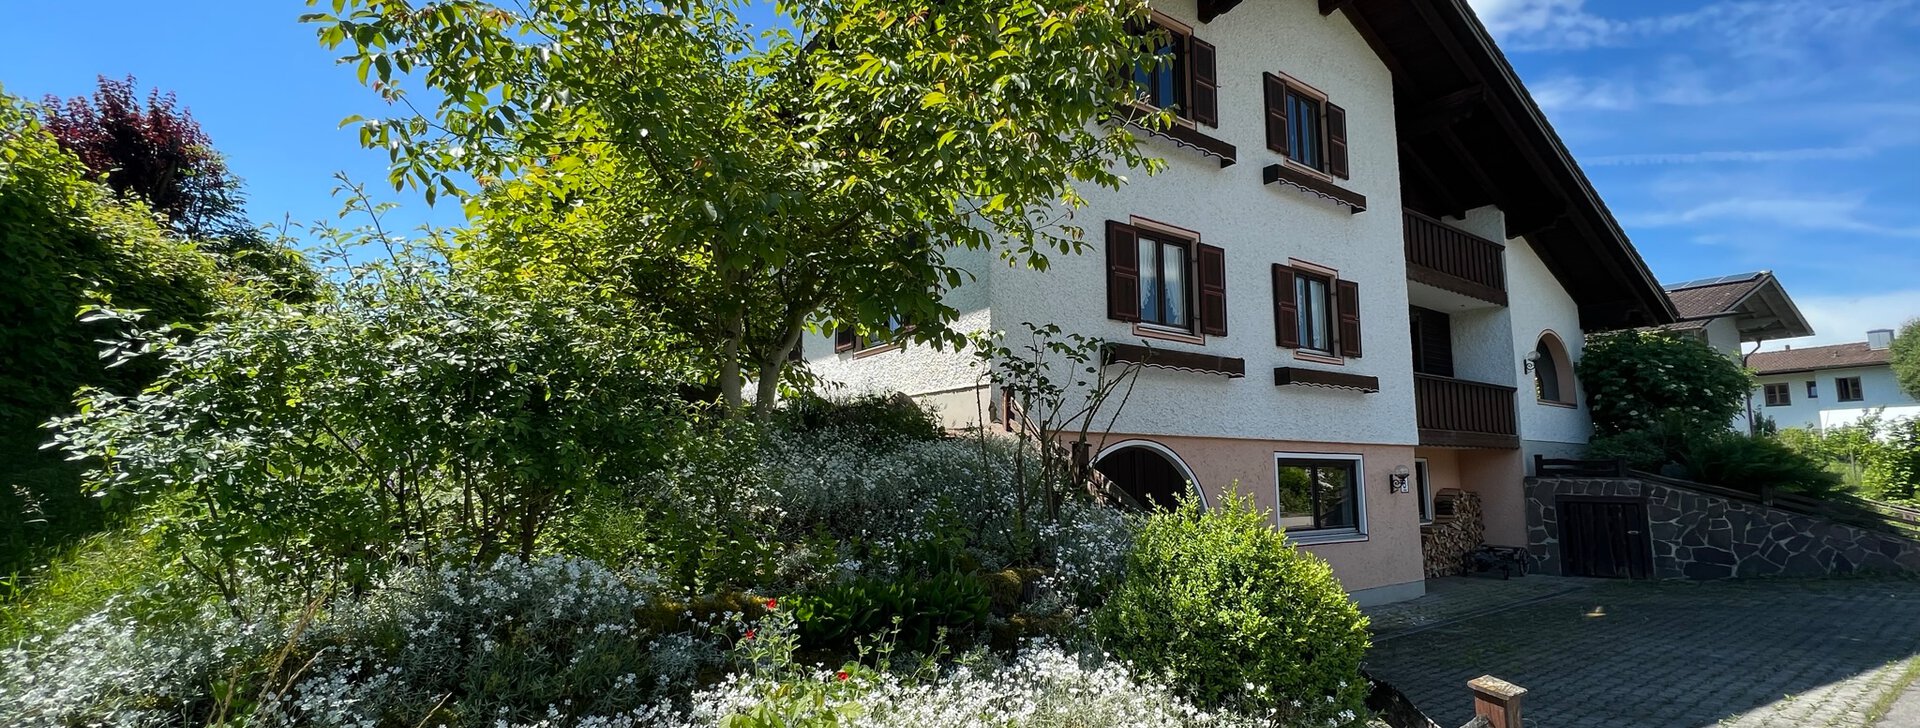 Einfamilienhaus mit großem Garten in Taching am See zum Kauf | © HausBauHaus GmbH Traunstein